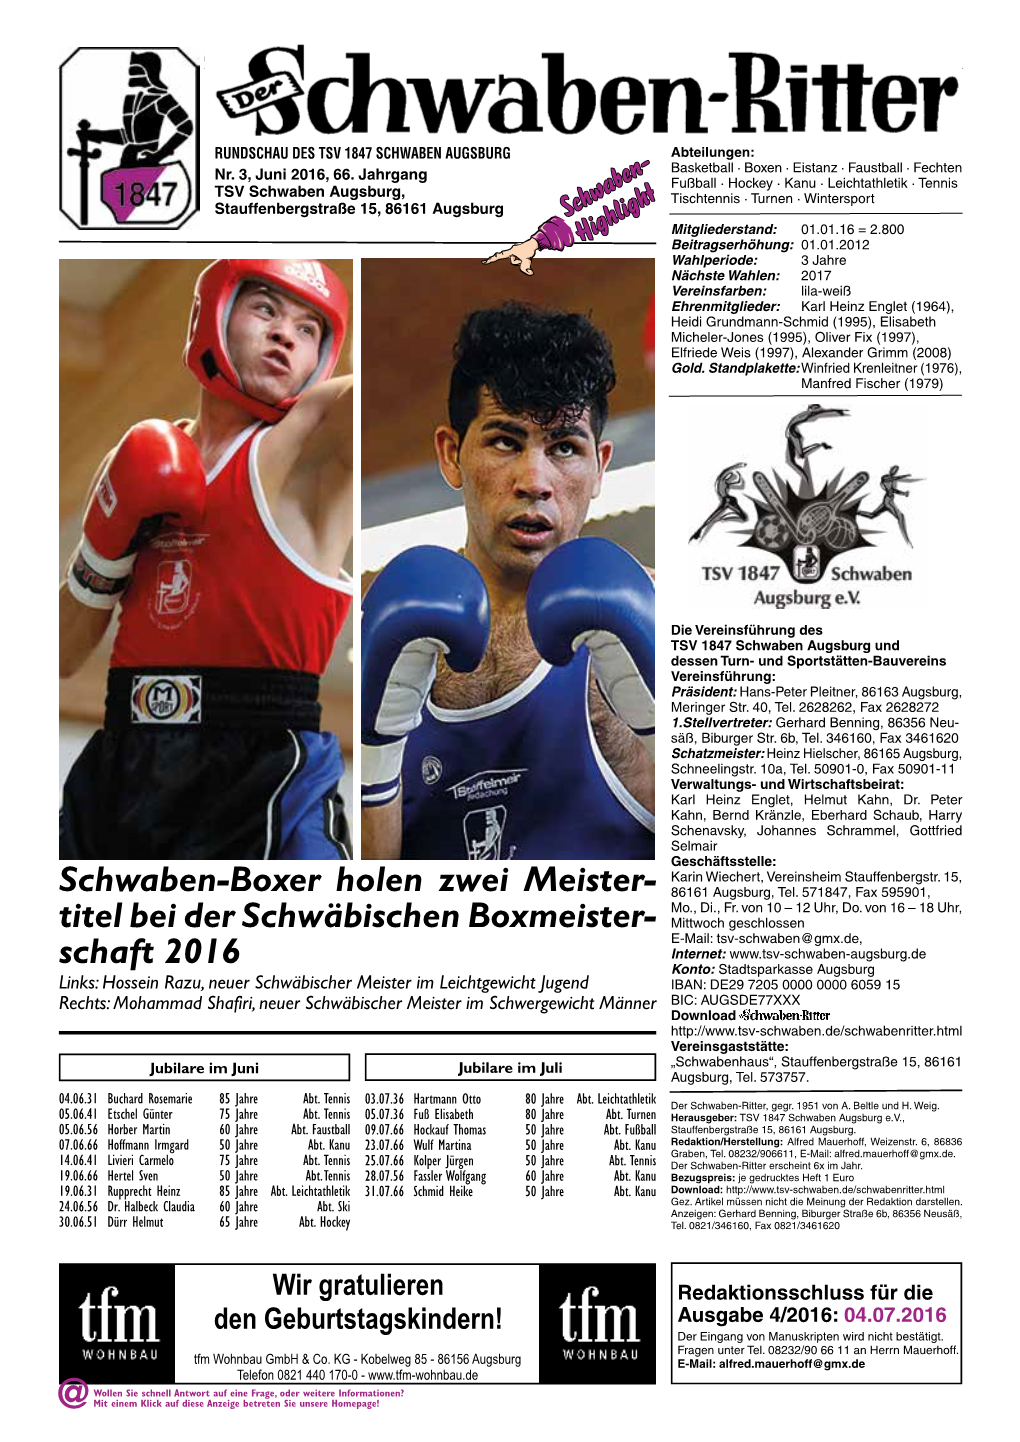 Schwaben-Boxer Holen Zwei Meister- 86161 Augsburg, Tel